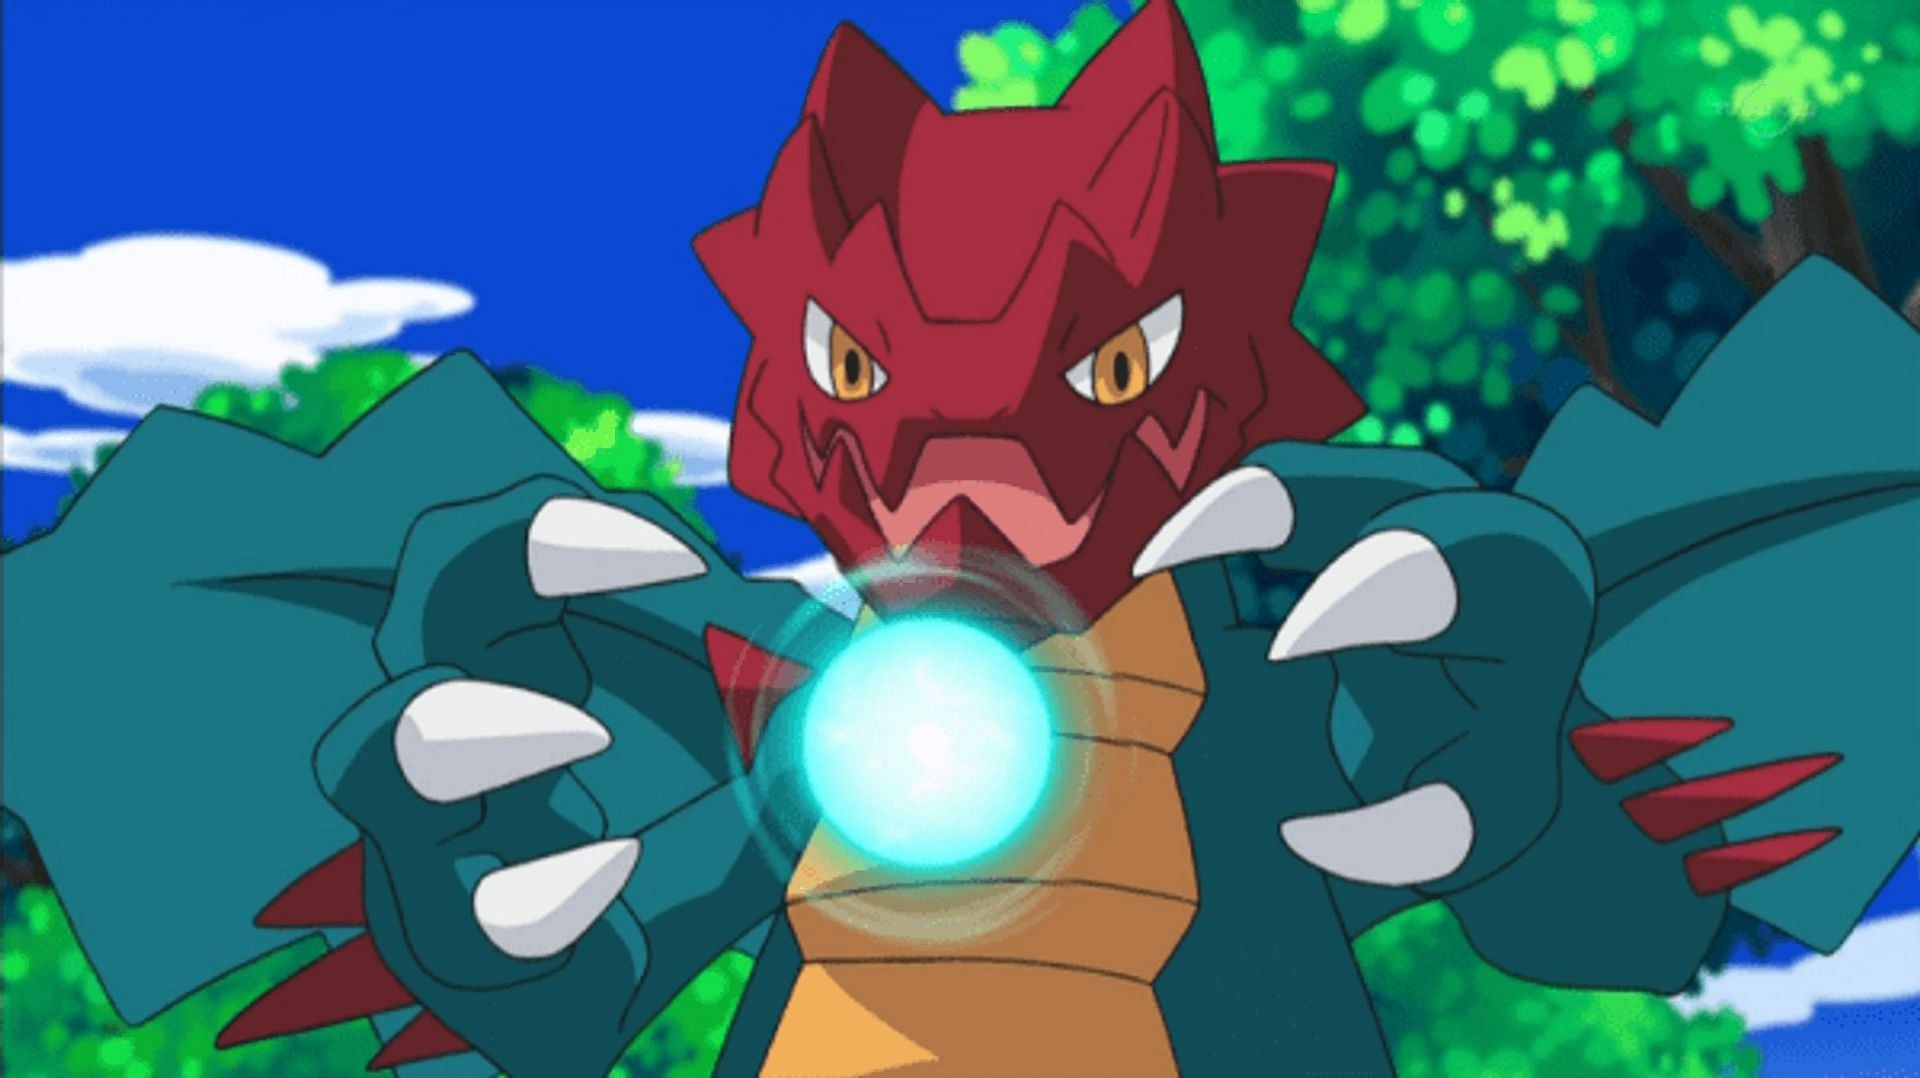 Serebii.net Pokémon Card Database - Dragon Majesty - #45 Druddigon